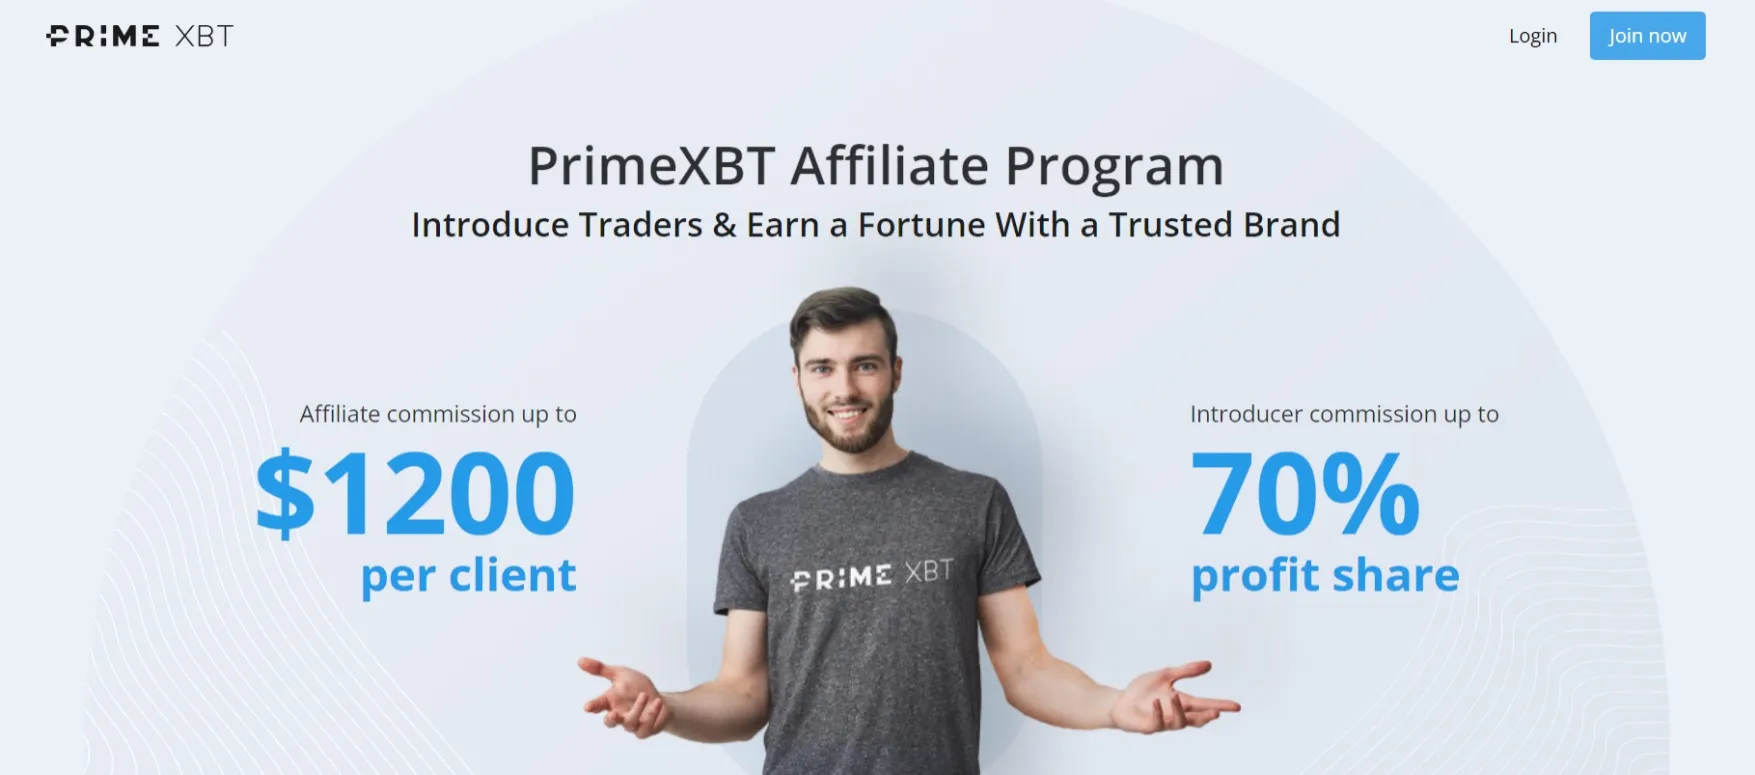 PrimeXBT Affiliate Program Review